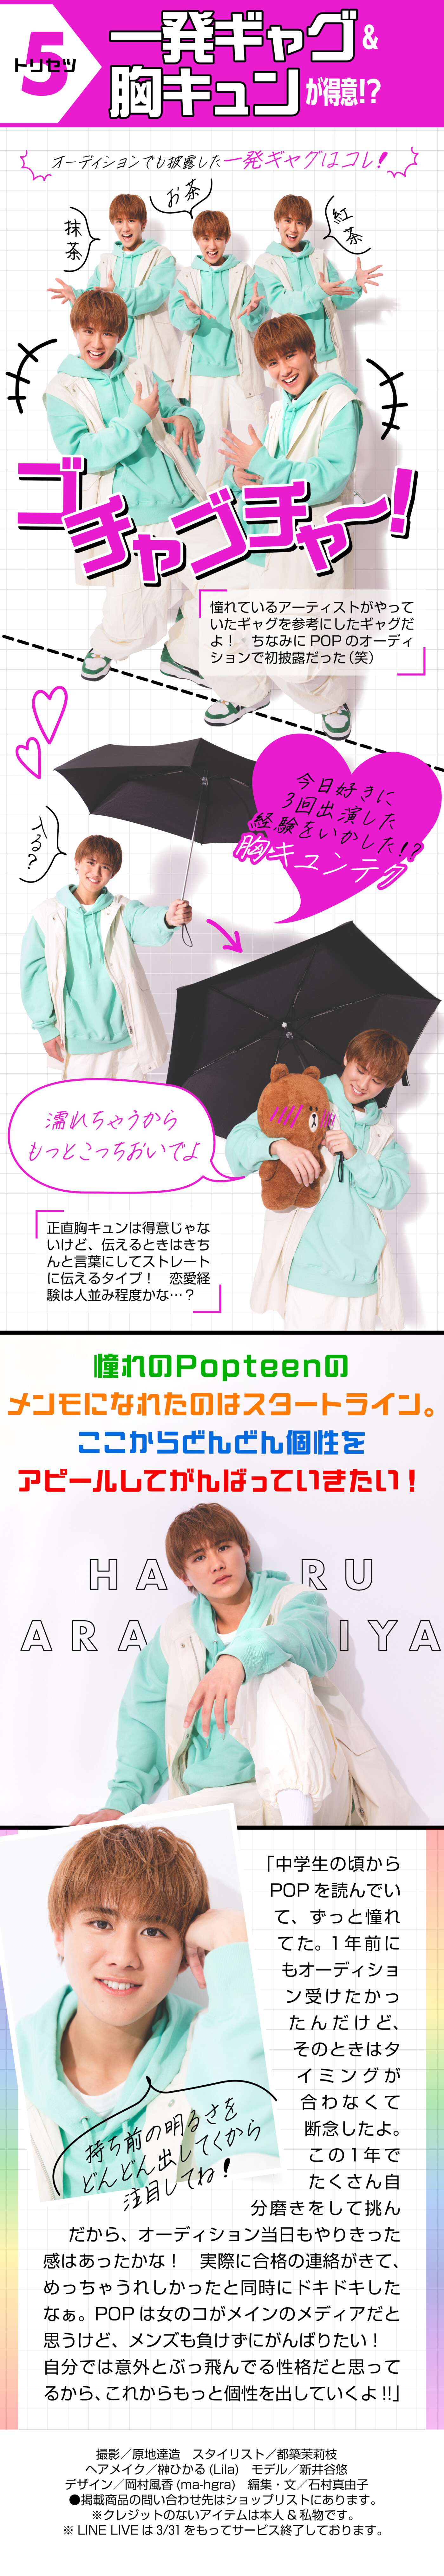 Popteen×LINE LIVE専属メンズモデルオーディショングランプリ【あらやん】のプロフ